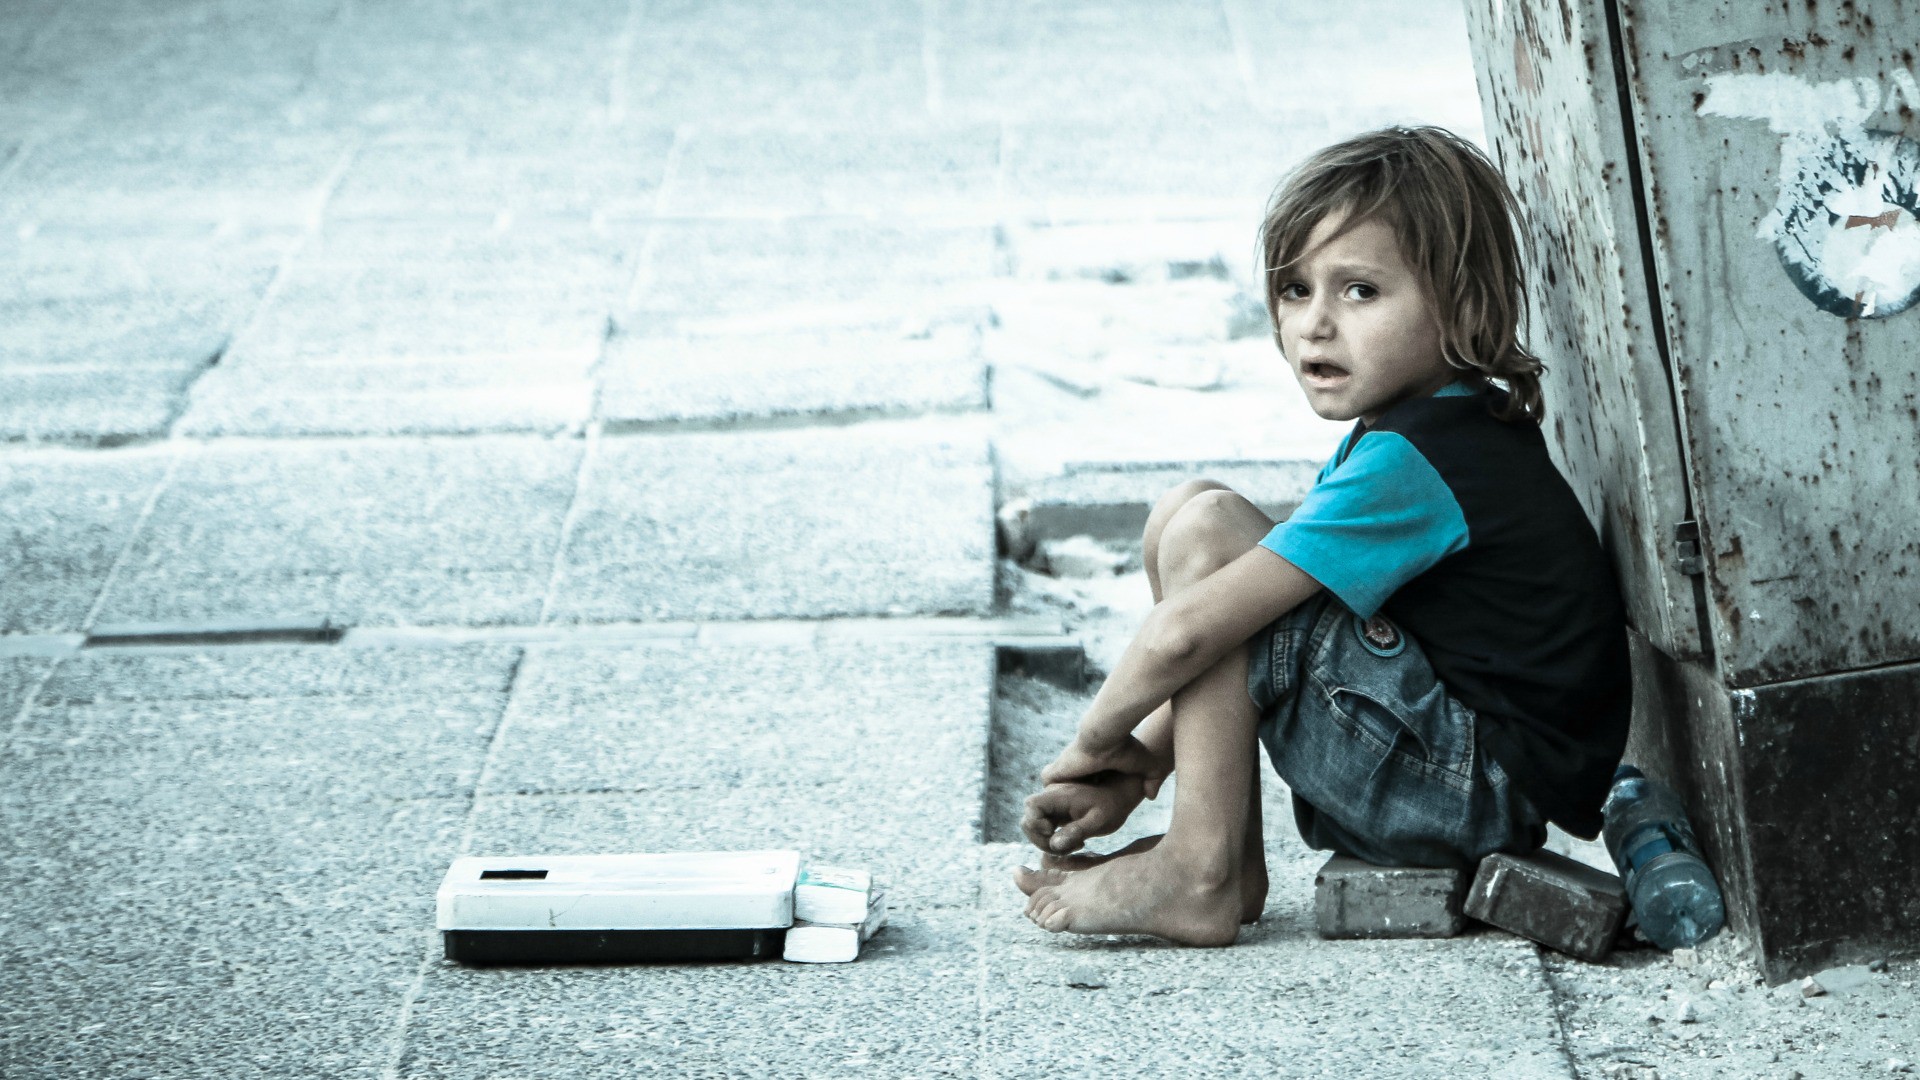 Redonner une dignité aux enfants des rues (Photo:Bengin Ahmad/Flickr/CC BY-ND 2.0)